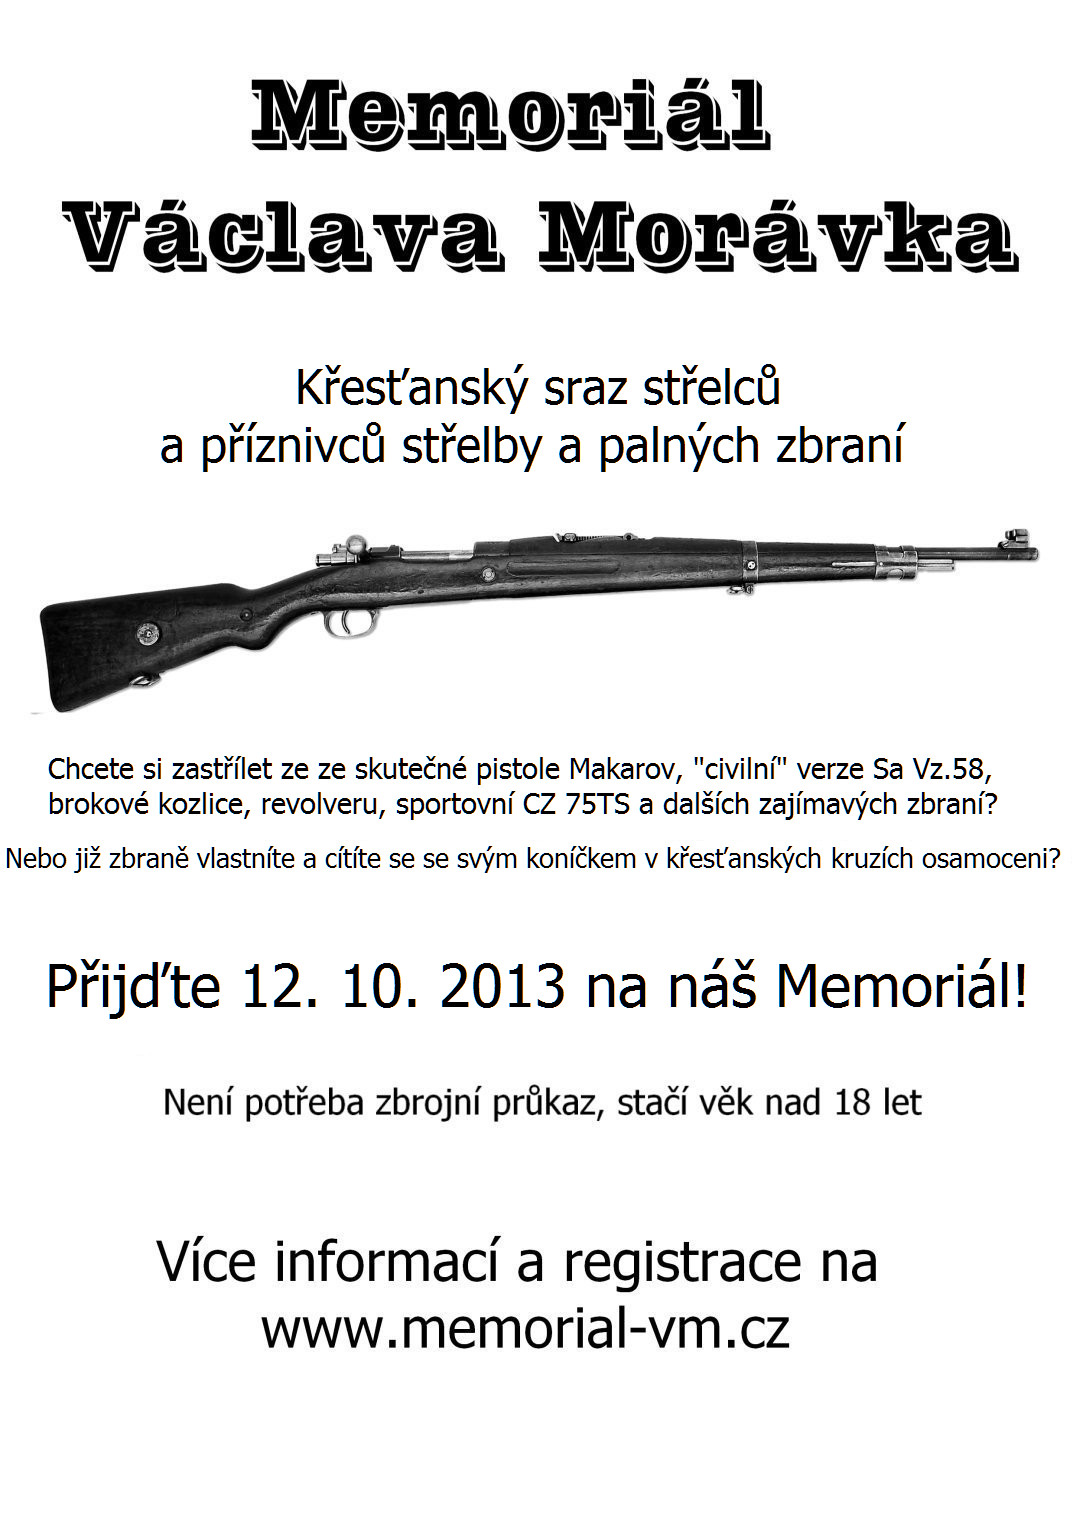 ZV_MVM_91mm_sirka_300dpi_2013-10.jpg